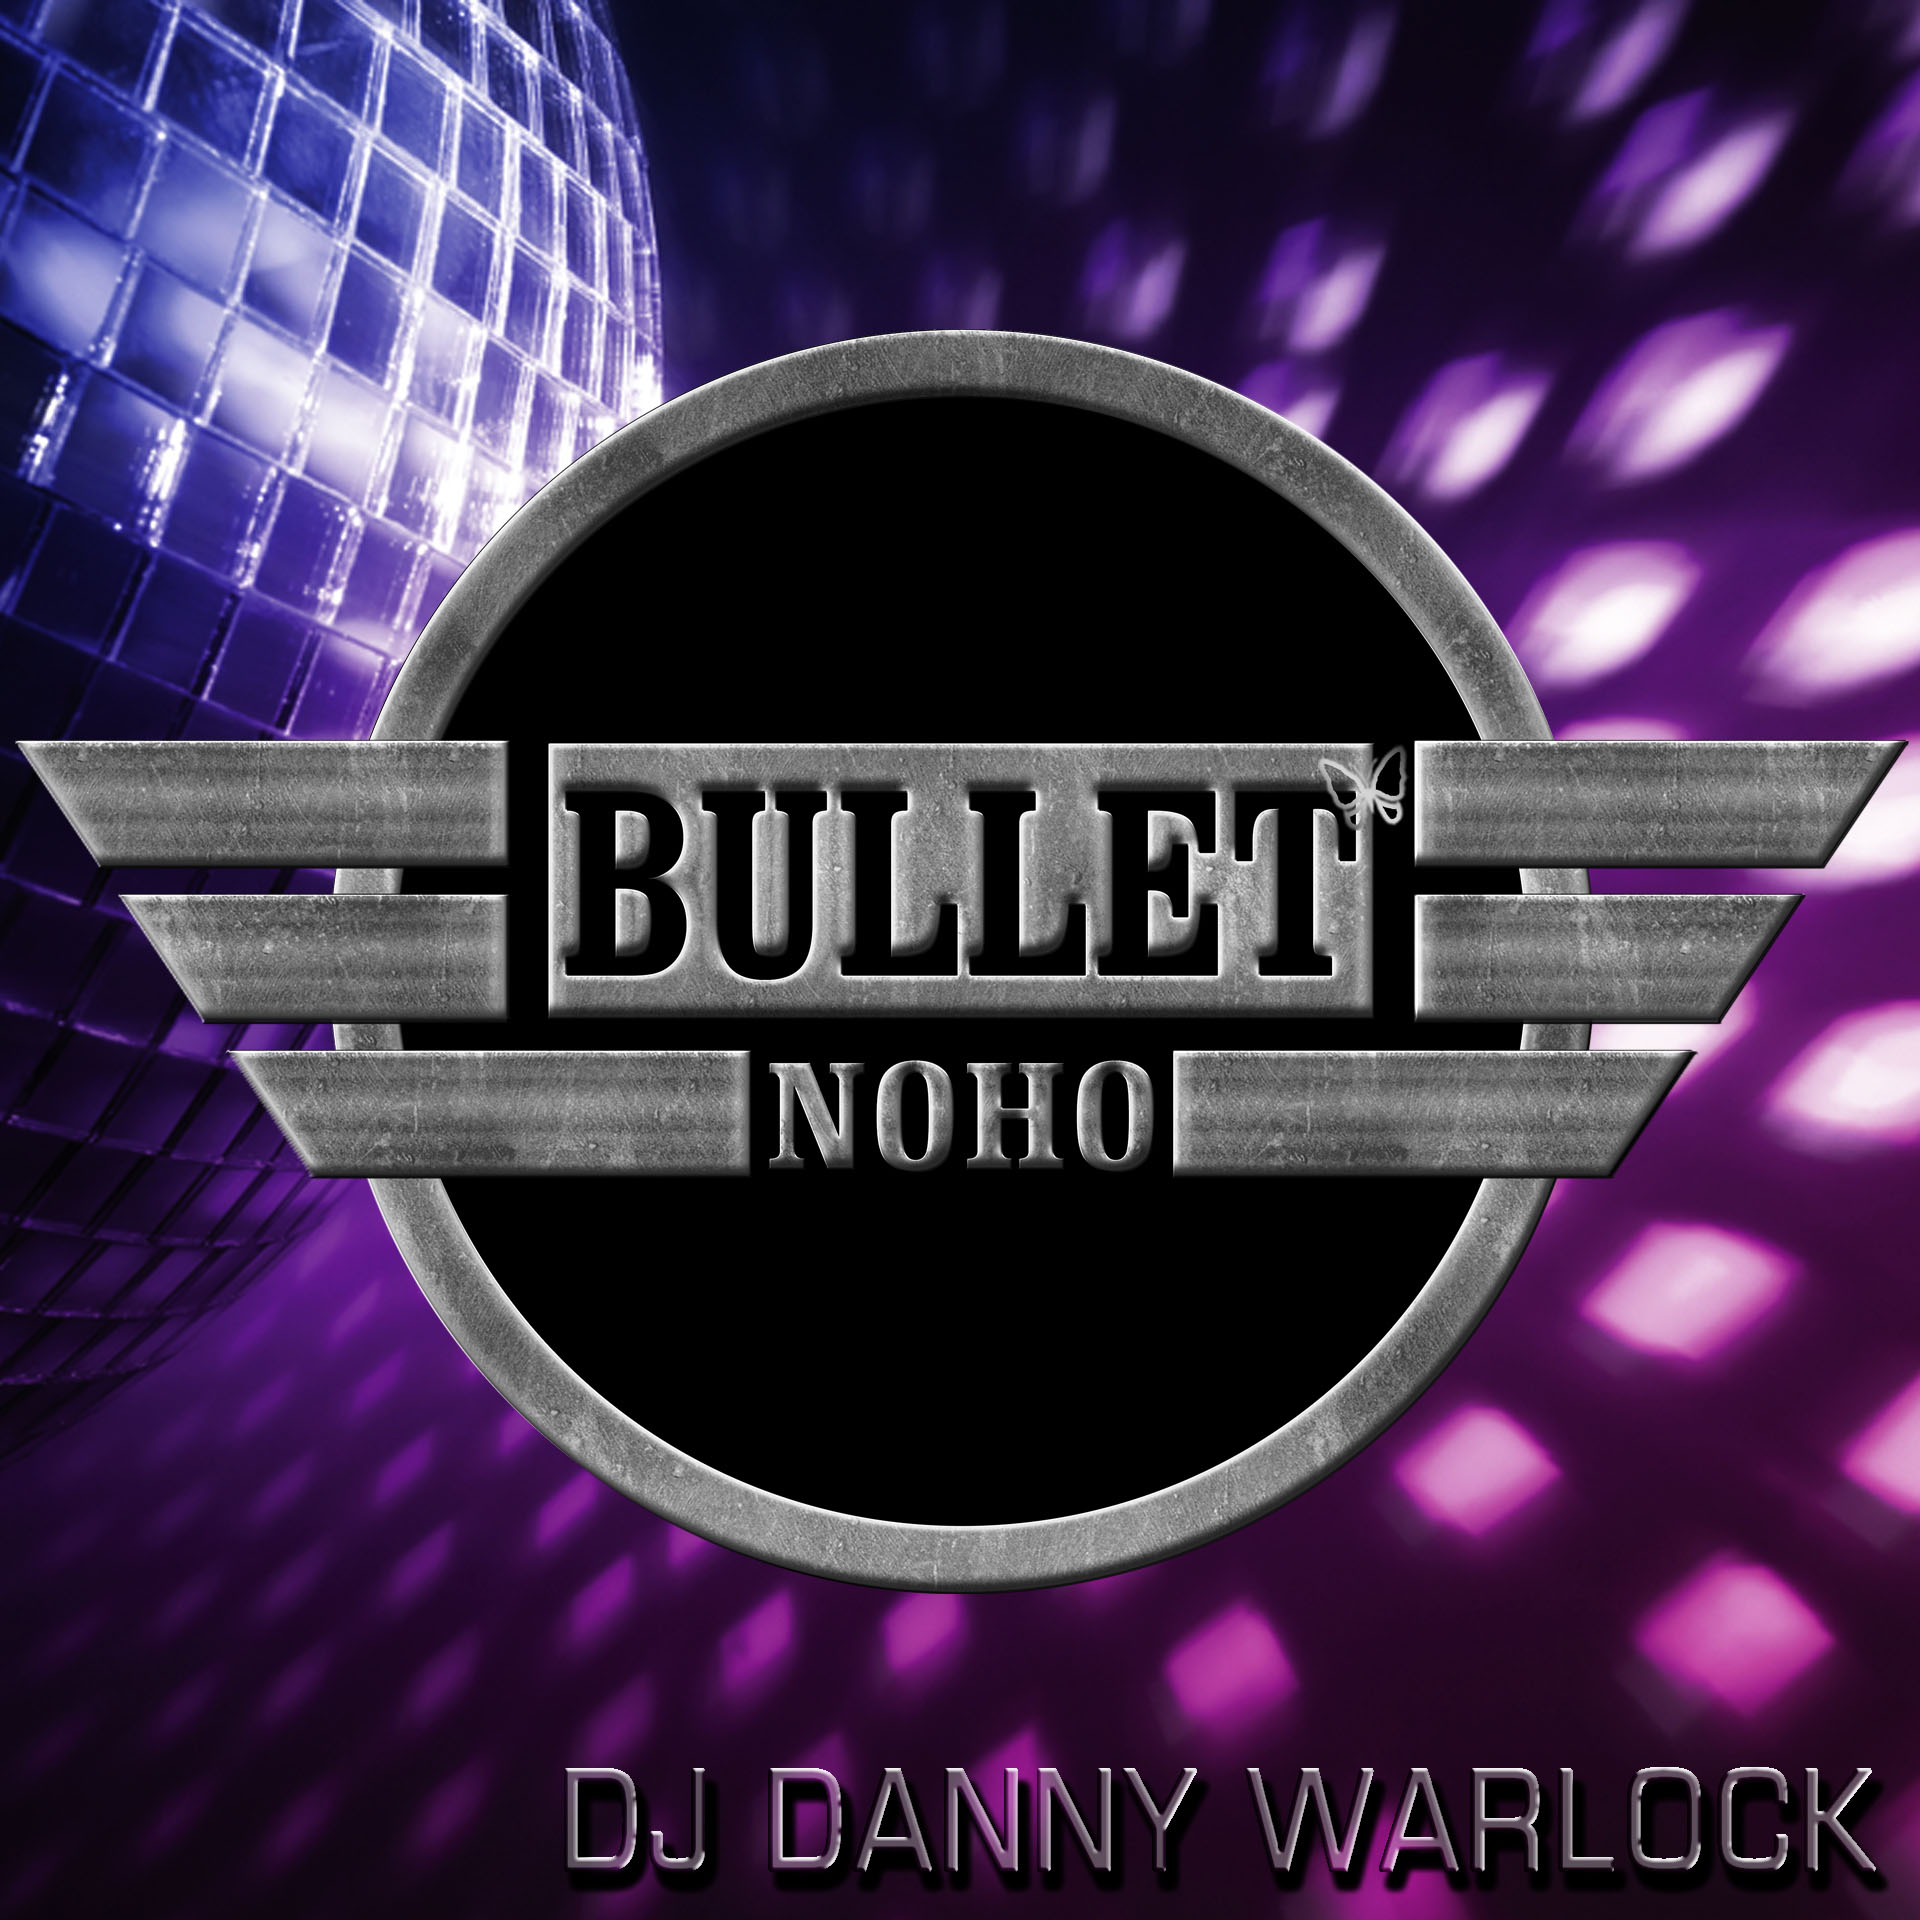 DJ DANNY WARLOCK: Saturday, 04/06/24 from 8:00 PM to 2:00 AM